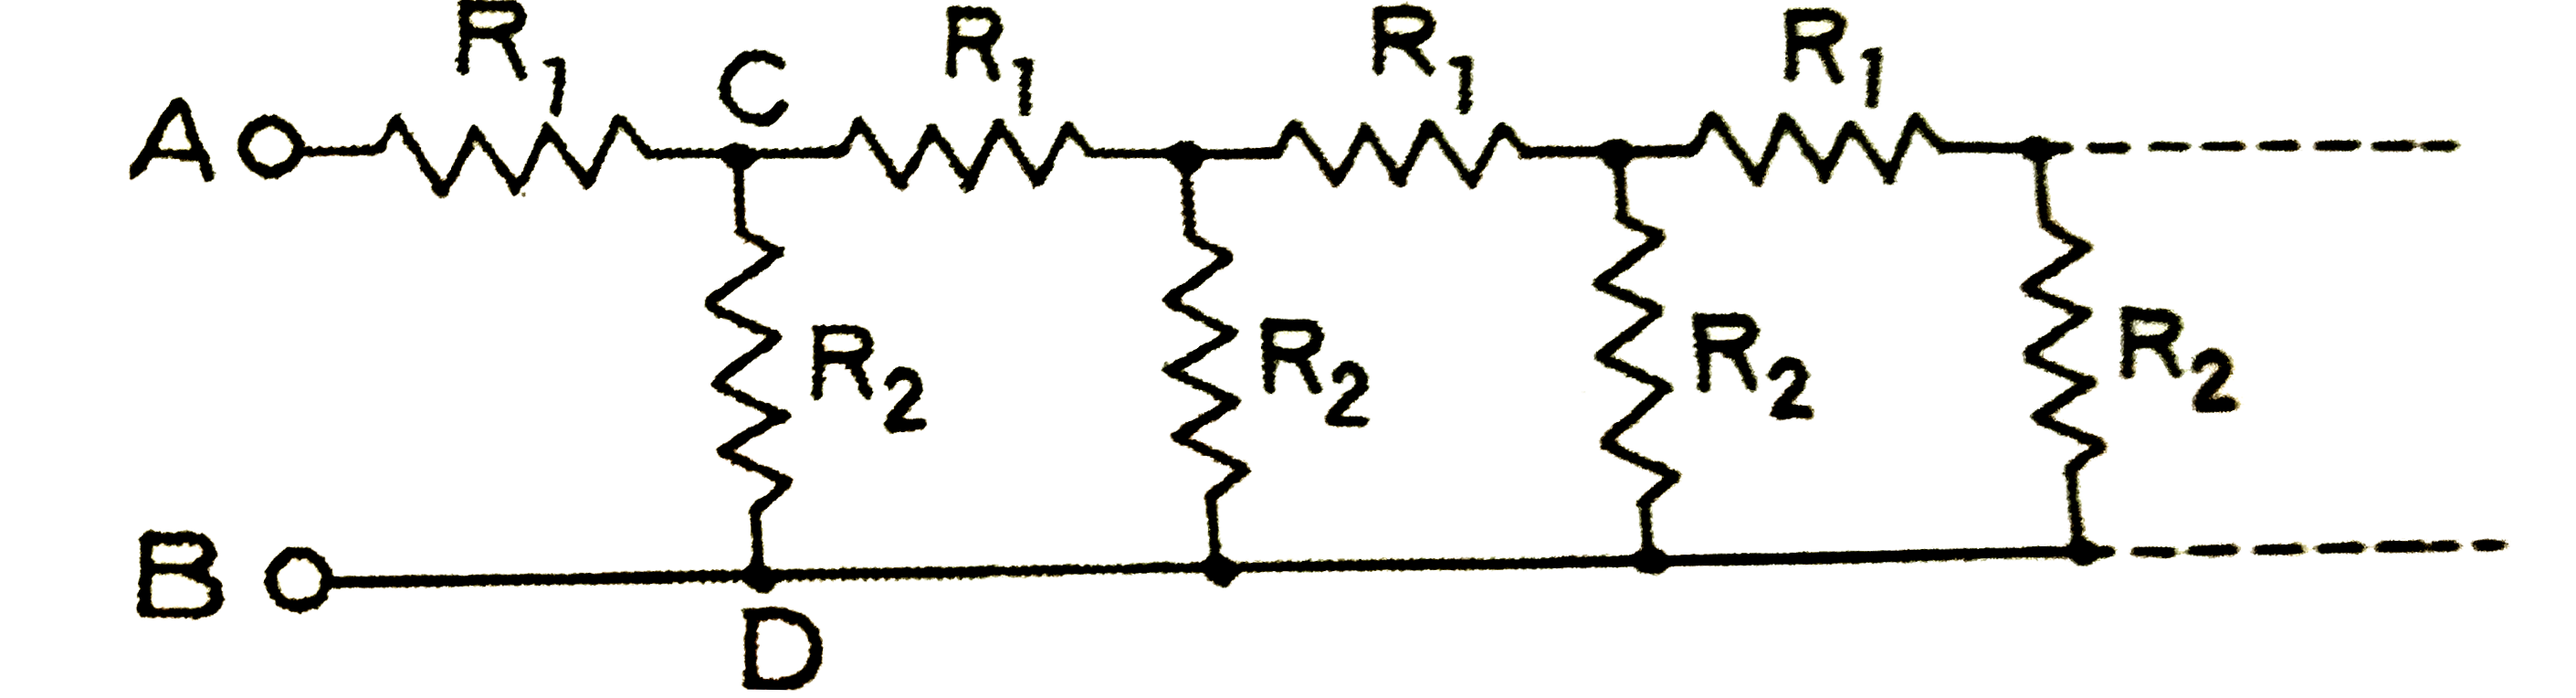 निम्न  चित्र  में एक  अपरिमित  प्रतिरोधों  वाला  परिपथ  प्रदर्शित  है  । बिन्दुओं  A  व  B  के  बीच  परिपथ  का प्रतिरोध  ज्ञात  कीजिए  जबकि  R(1)=1   ओम तथा  R(2)=2  ओम  है ।